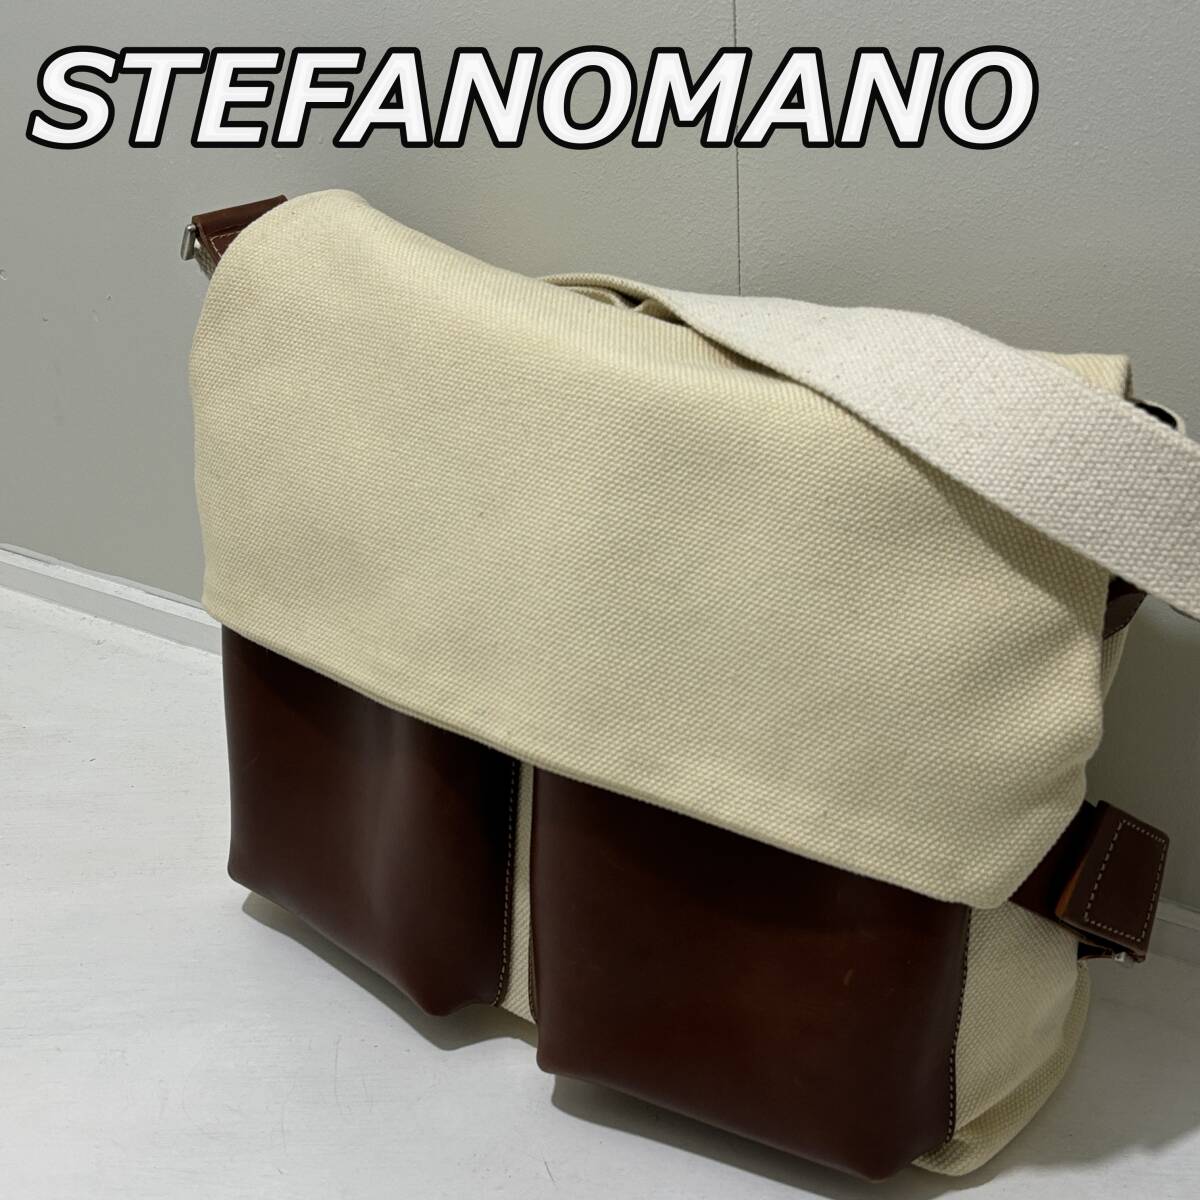 【STEFANOMANO】ステファノマーノ イタリア製 キャンバス 帆布 レザー コンビ ショルダーバッグ 斜め掛け かばん 茶 ベージュ ブラウンの画像1